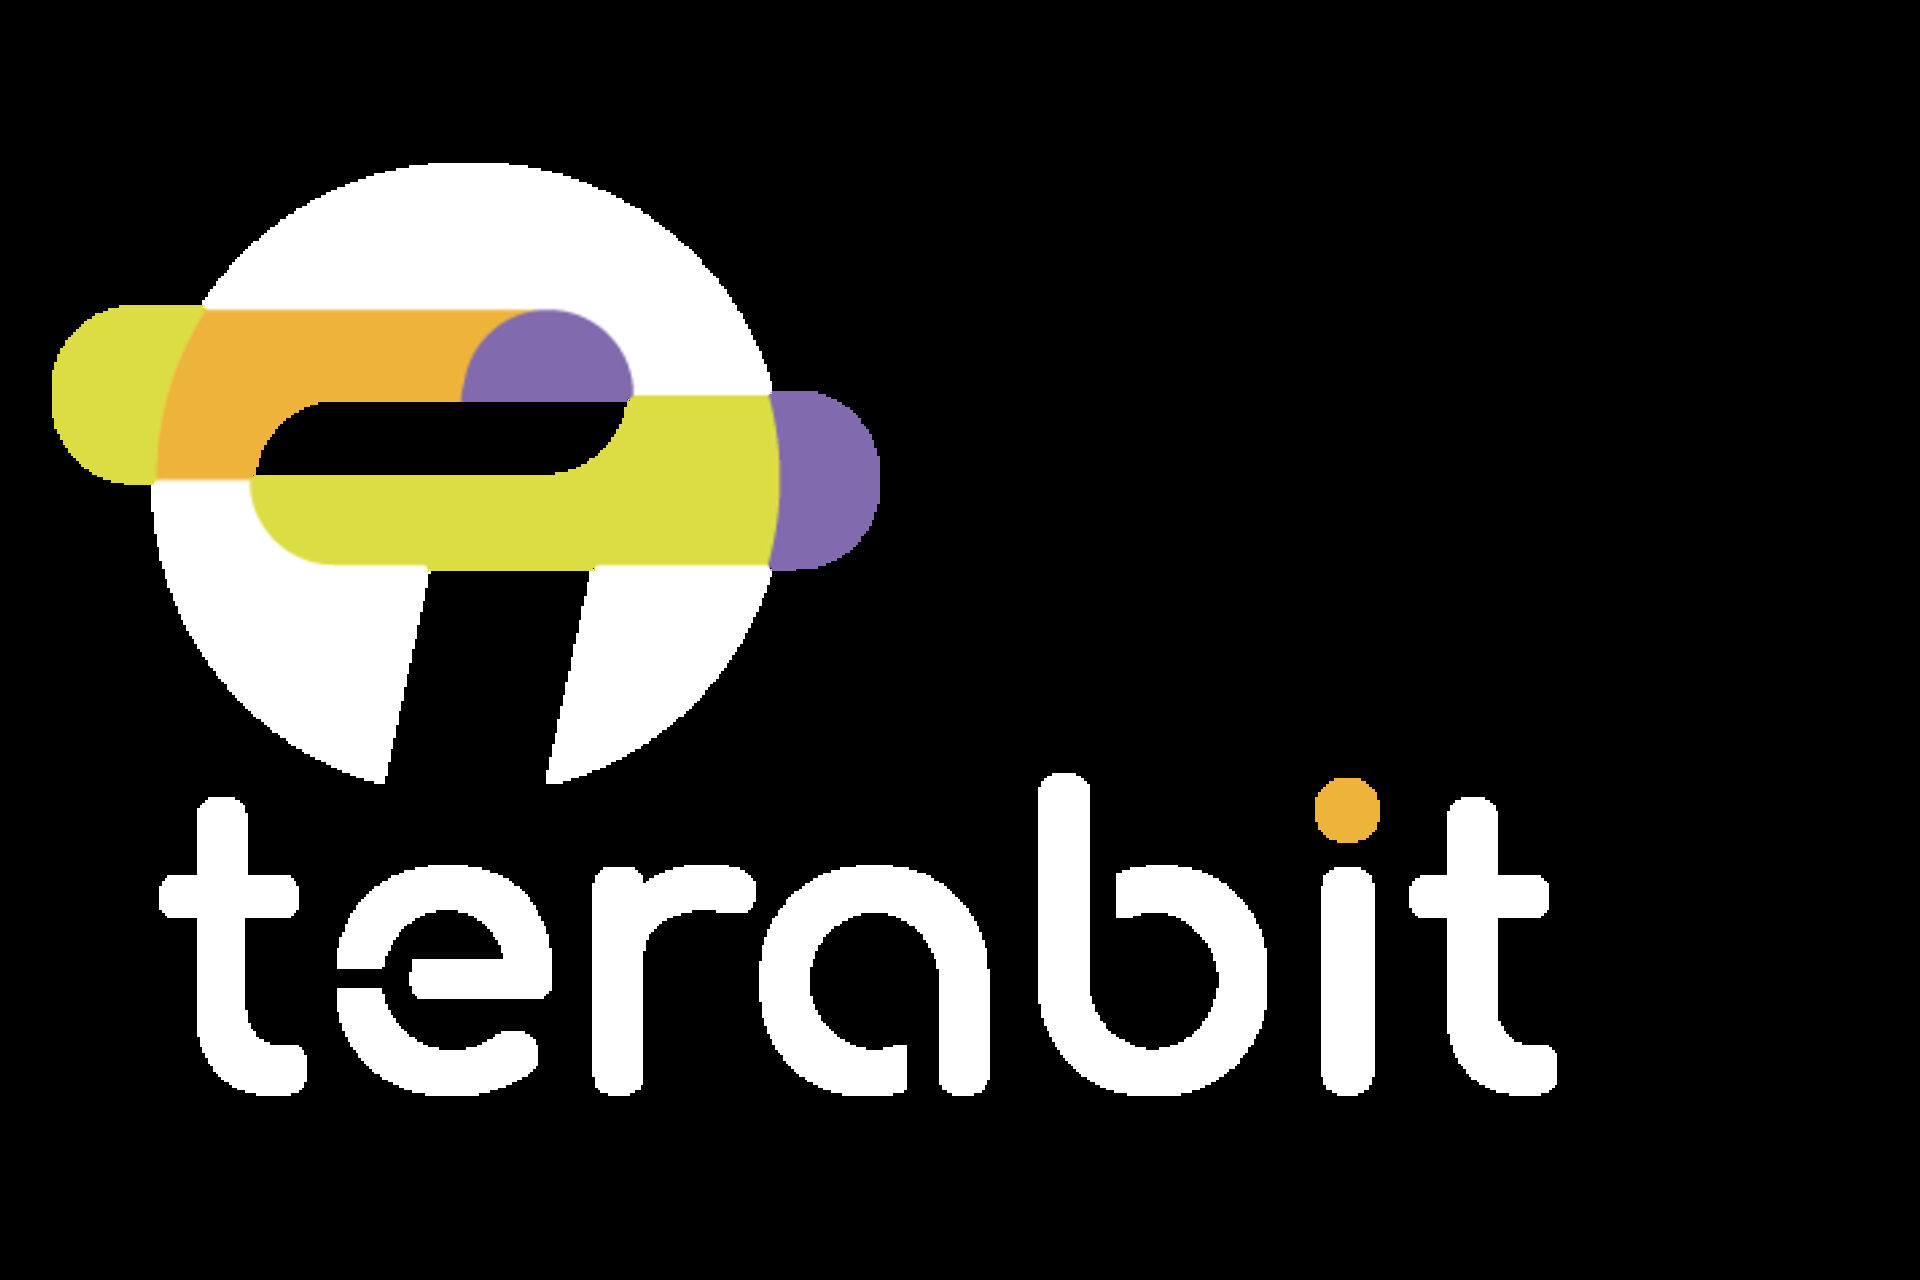 TERABIT: logotip ili logo projekta